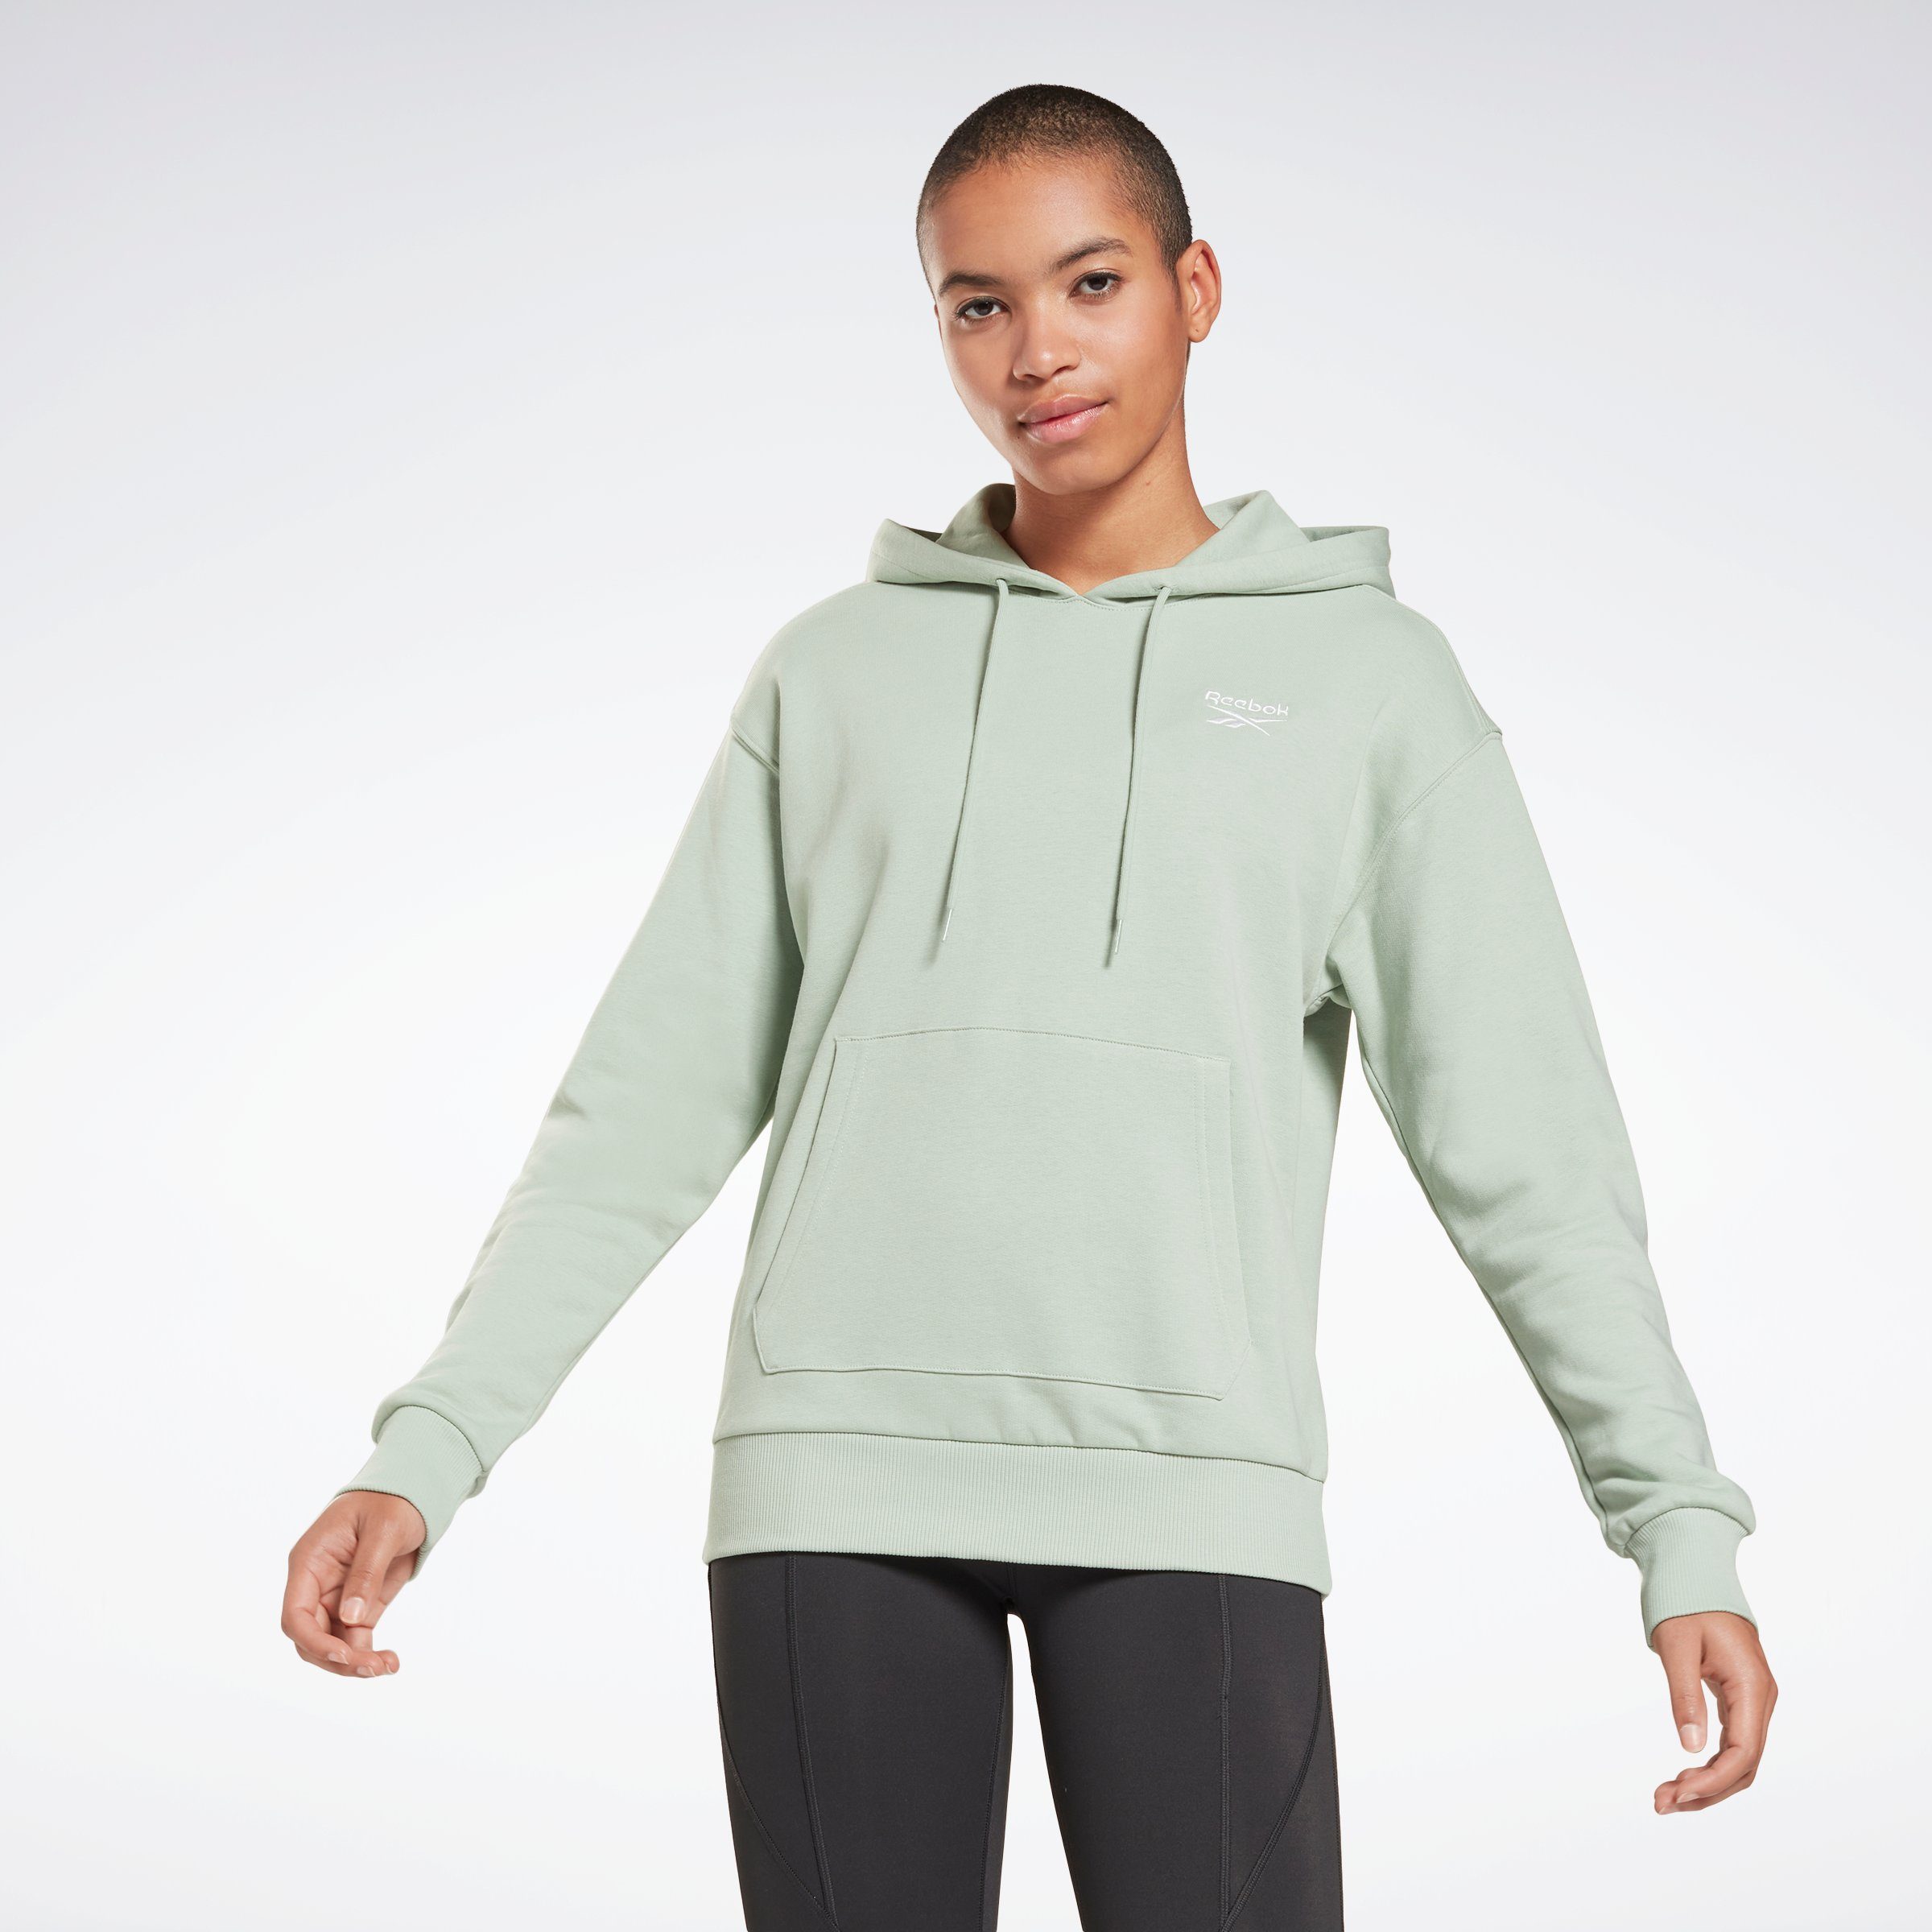 Reebok Damen Sweatshirts online kaufen | OTTO